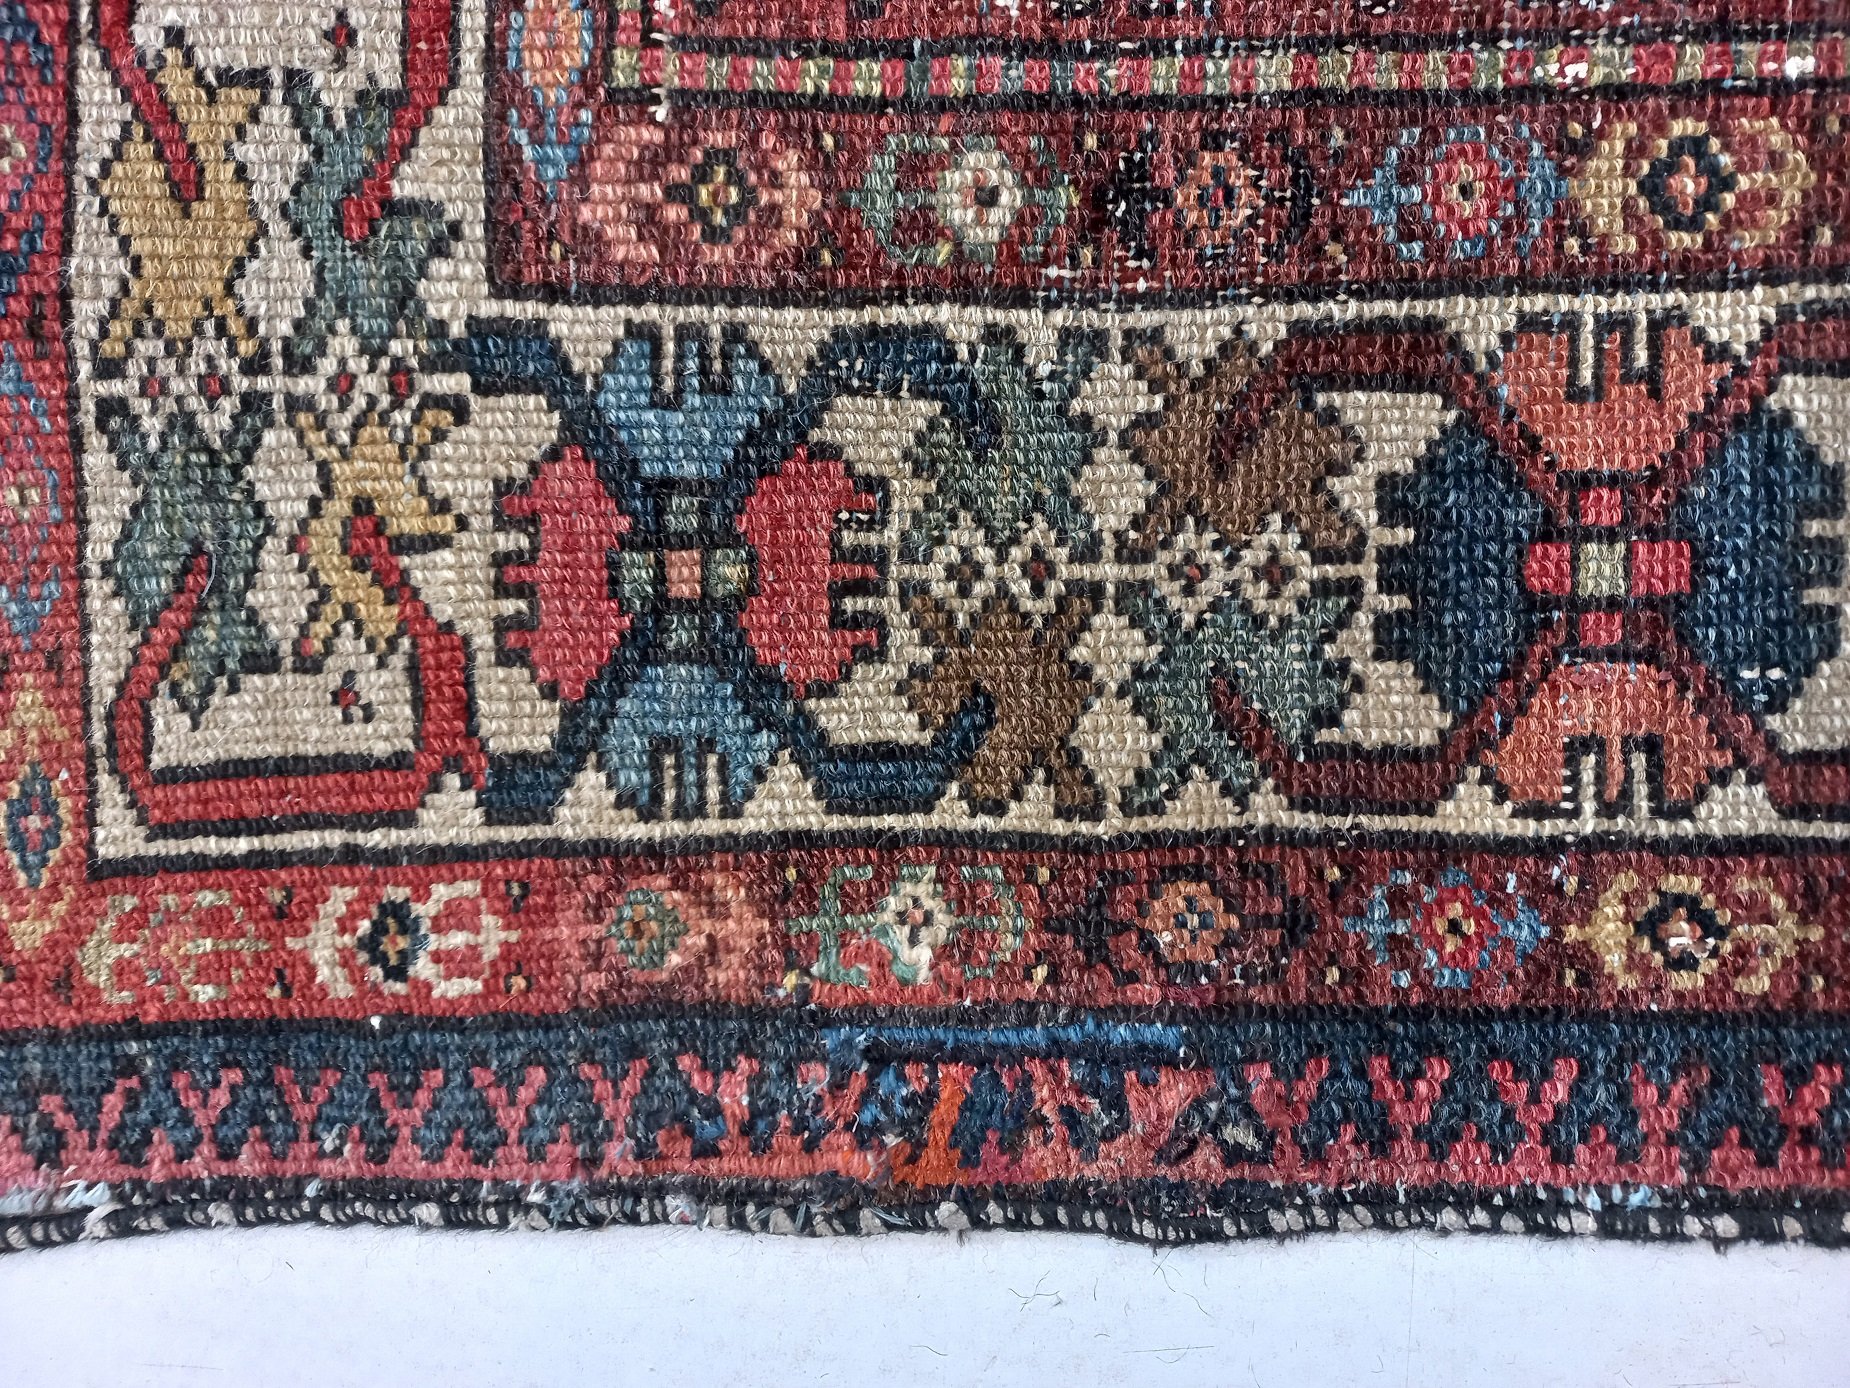 תיקון חור בשטיח פרסי. תיקון אומנותי בשטיח כהן שטיחים